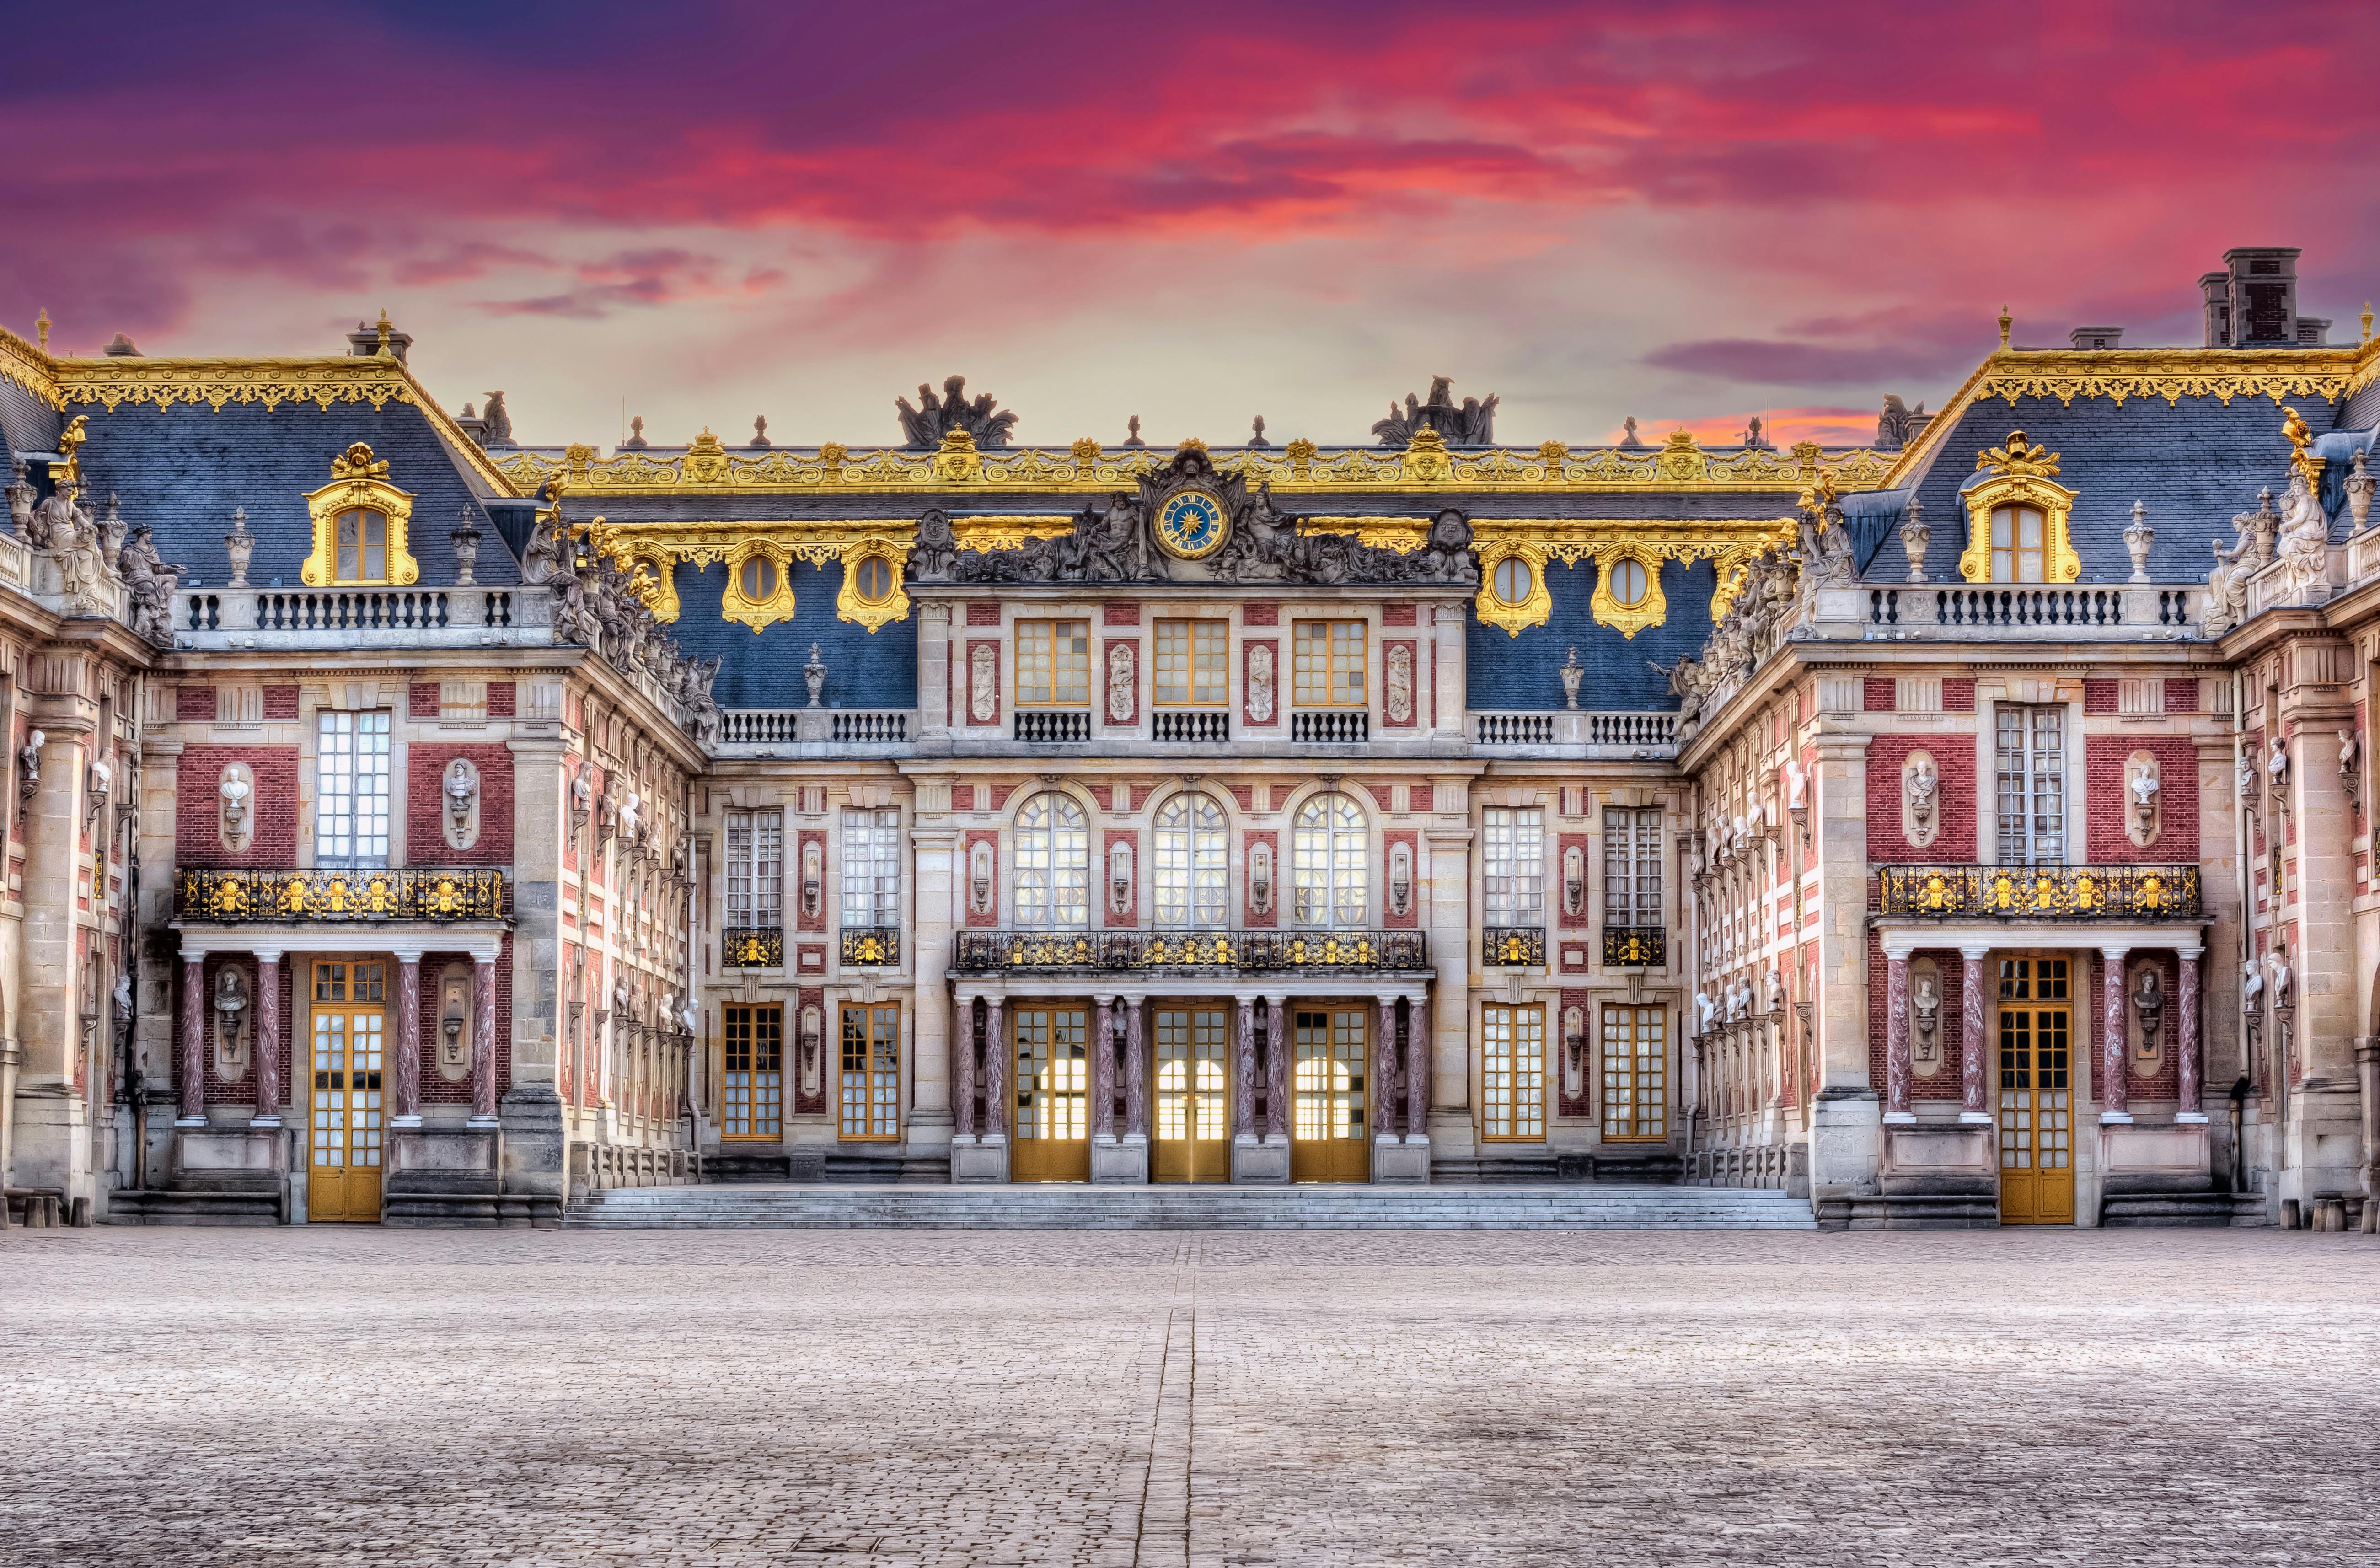 Visita guiada al Palacio de Versalles desde París que incluye espectáculos en los jardines